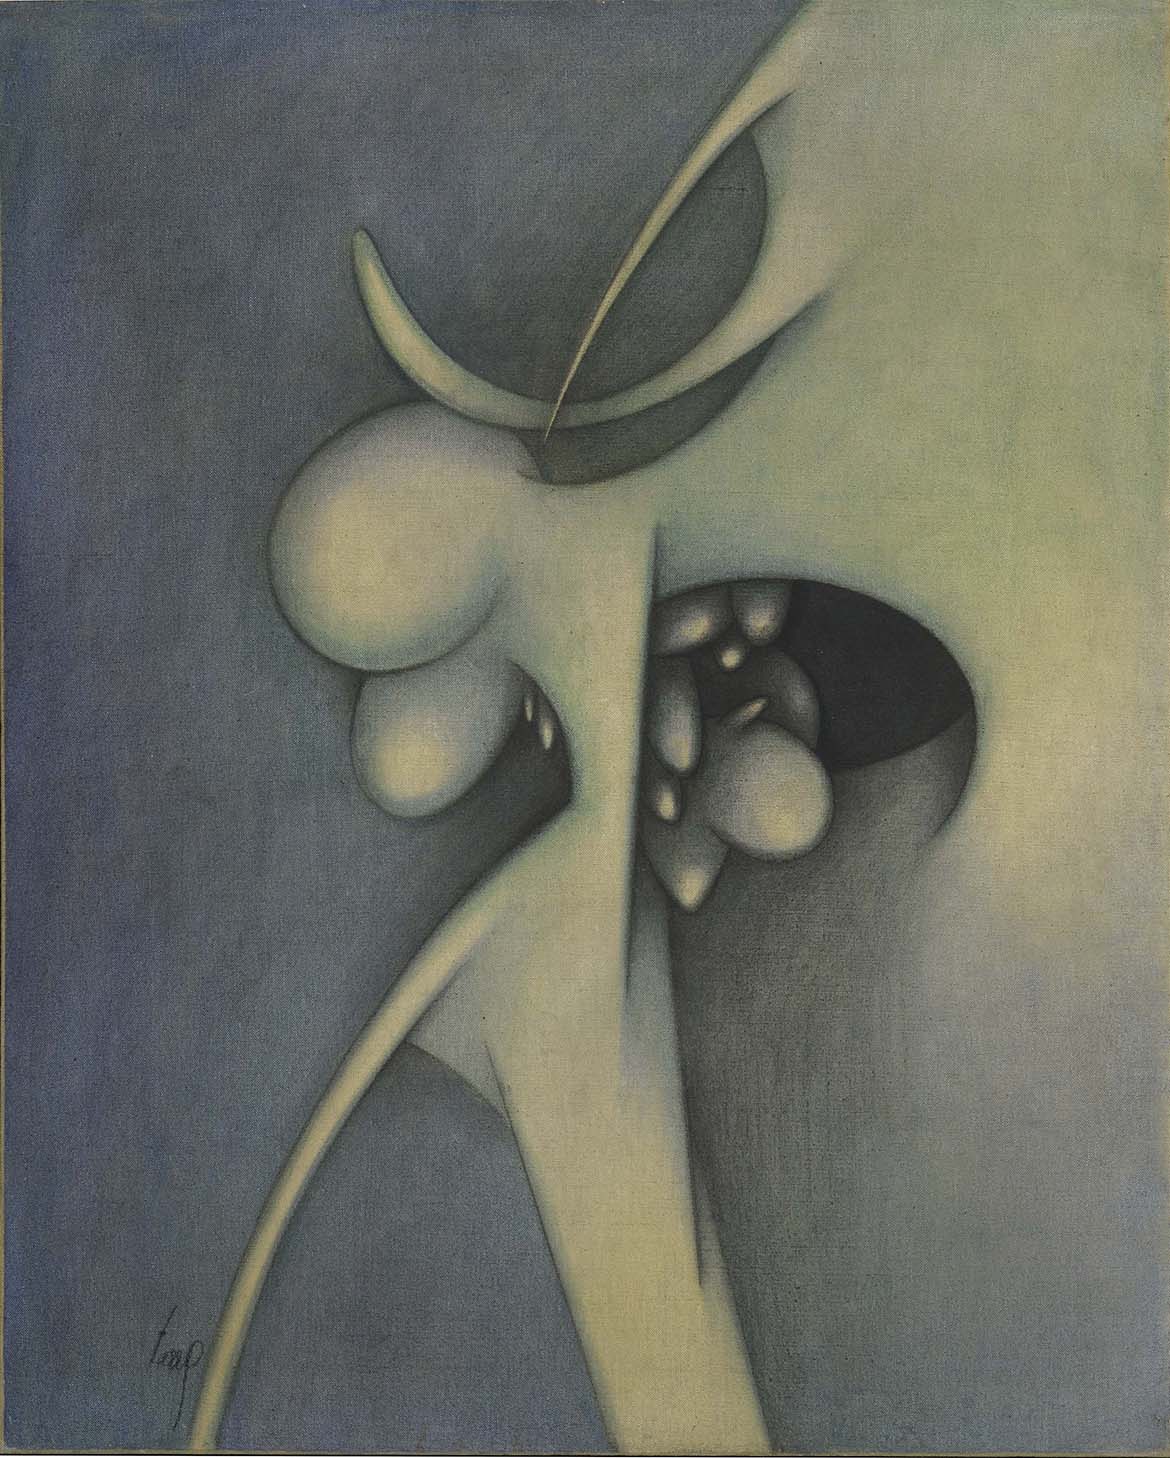 Joaquin Ferrer. Le vide et la présence, 1959, 81x65, huile sur toile. Coll particulière